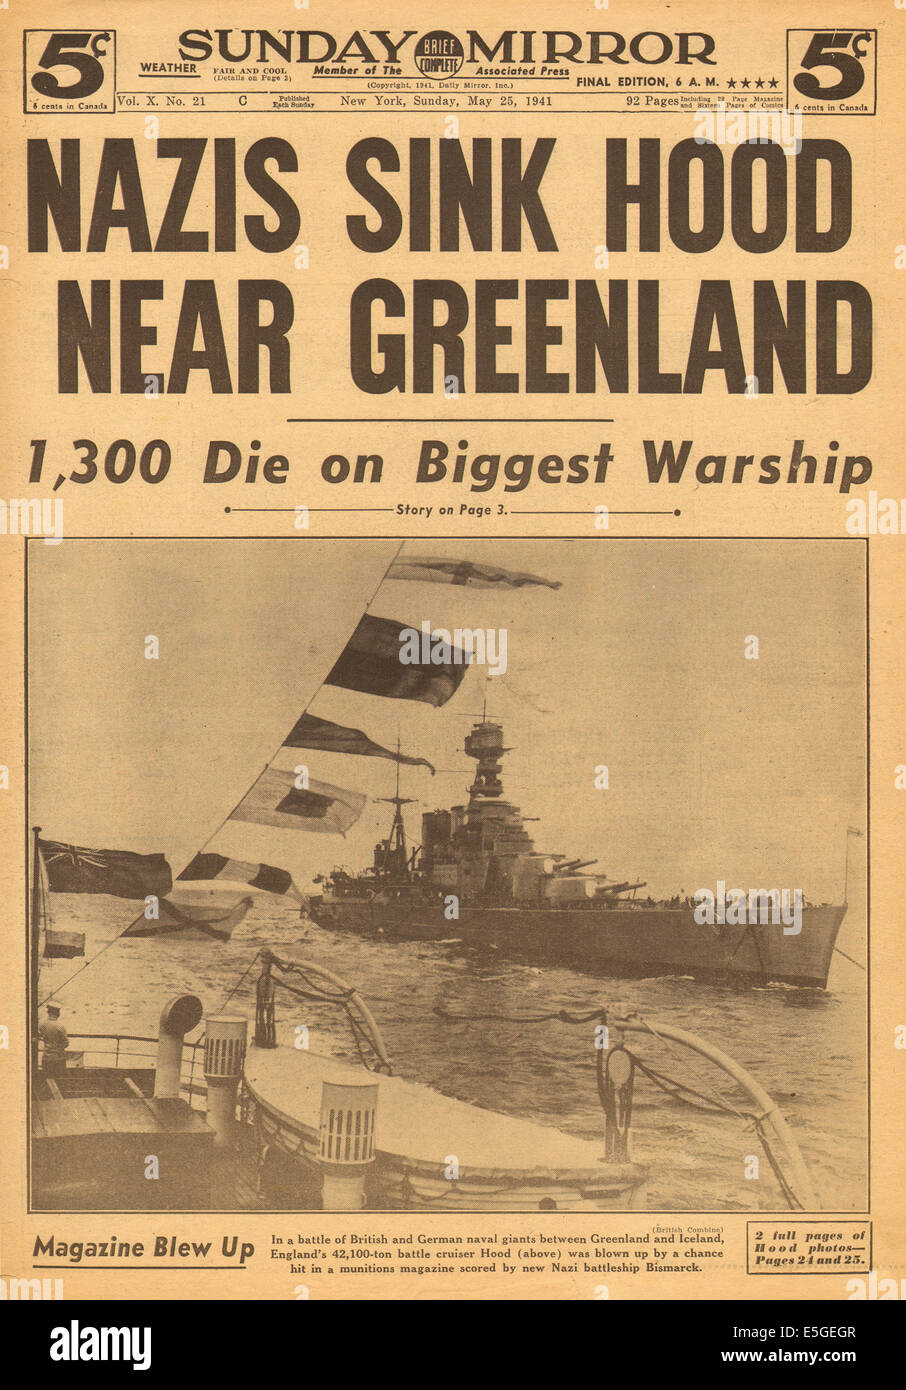 1941 Sunday Mirror New York Titelseite Berichterstattung